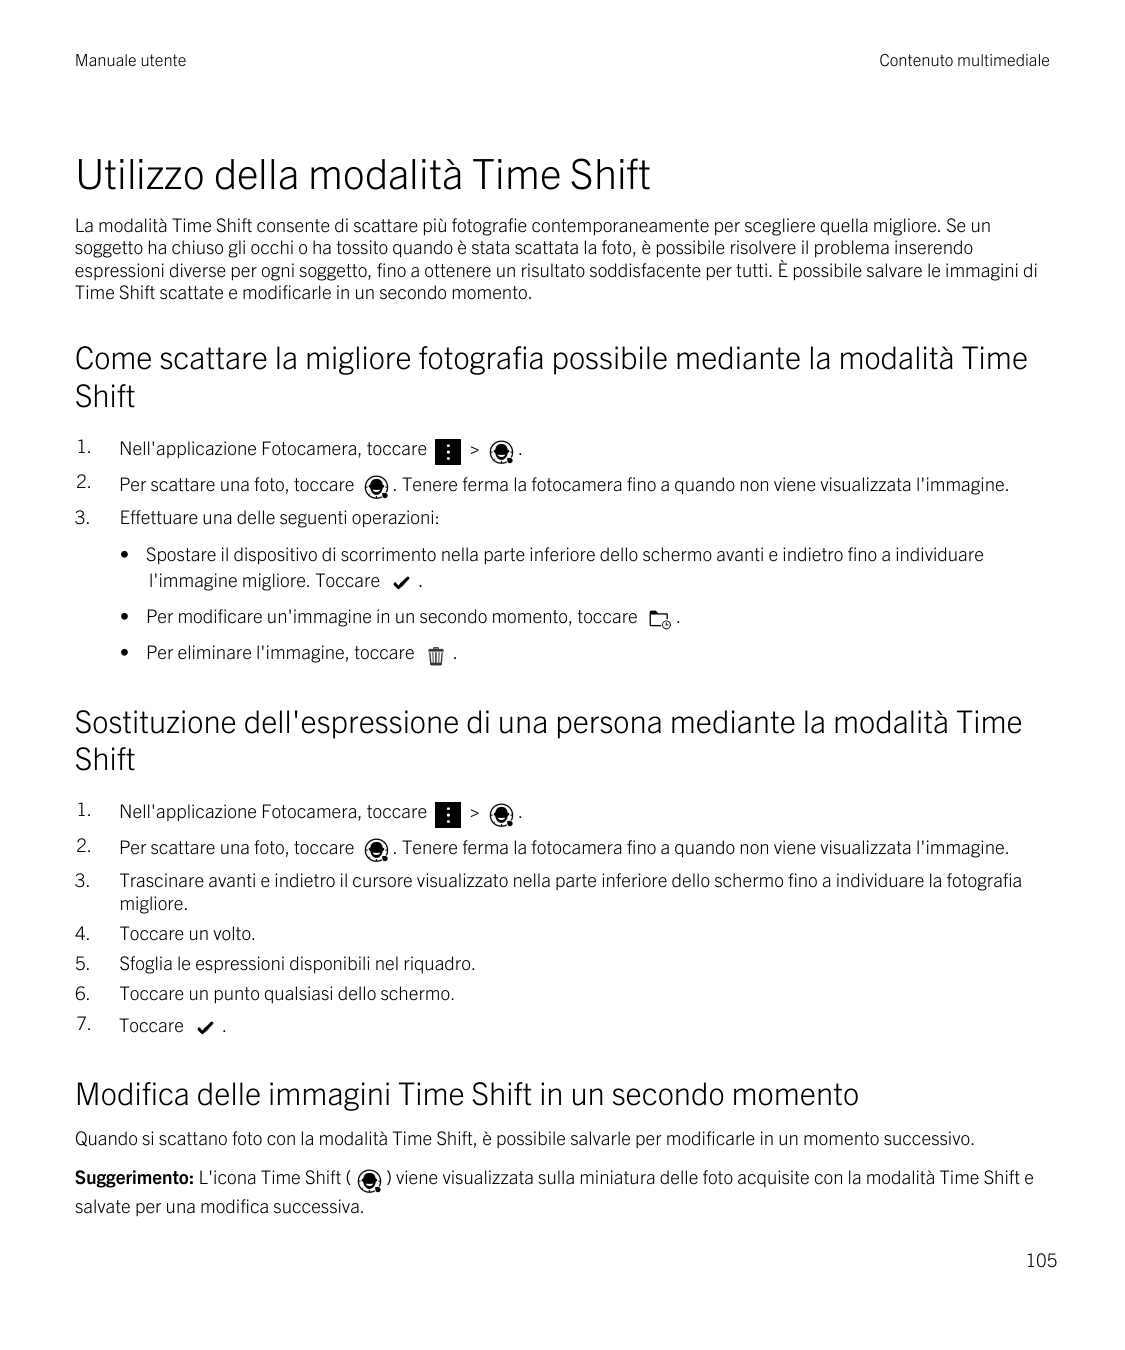 Manuale utenteContenuto multimedialeUtilizzo della modalità Time ShiftLa modalità Time Shift consente di scattare più fotografie